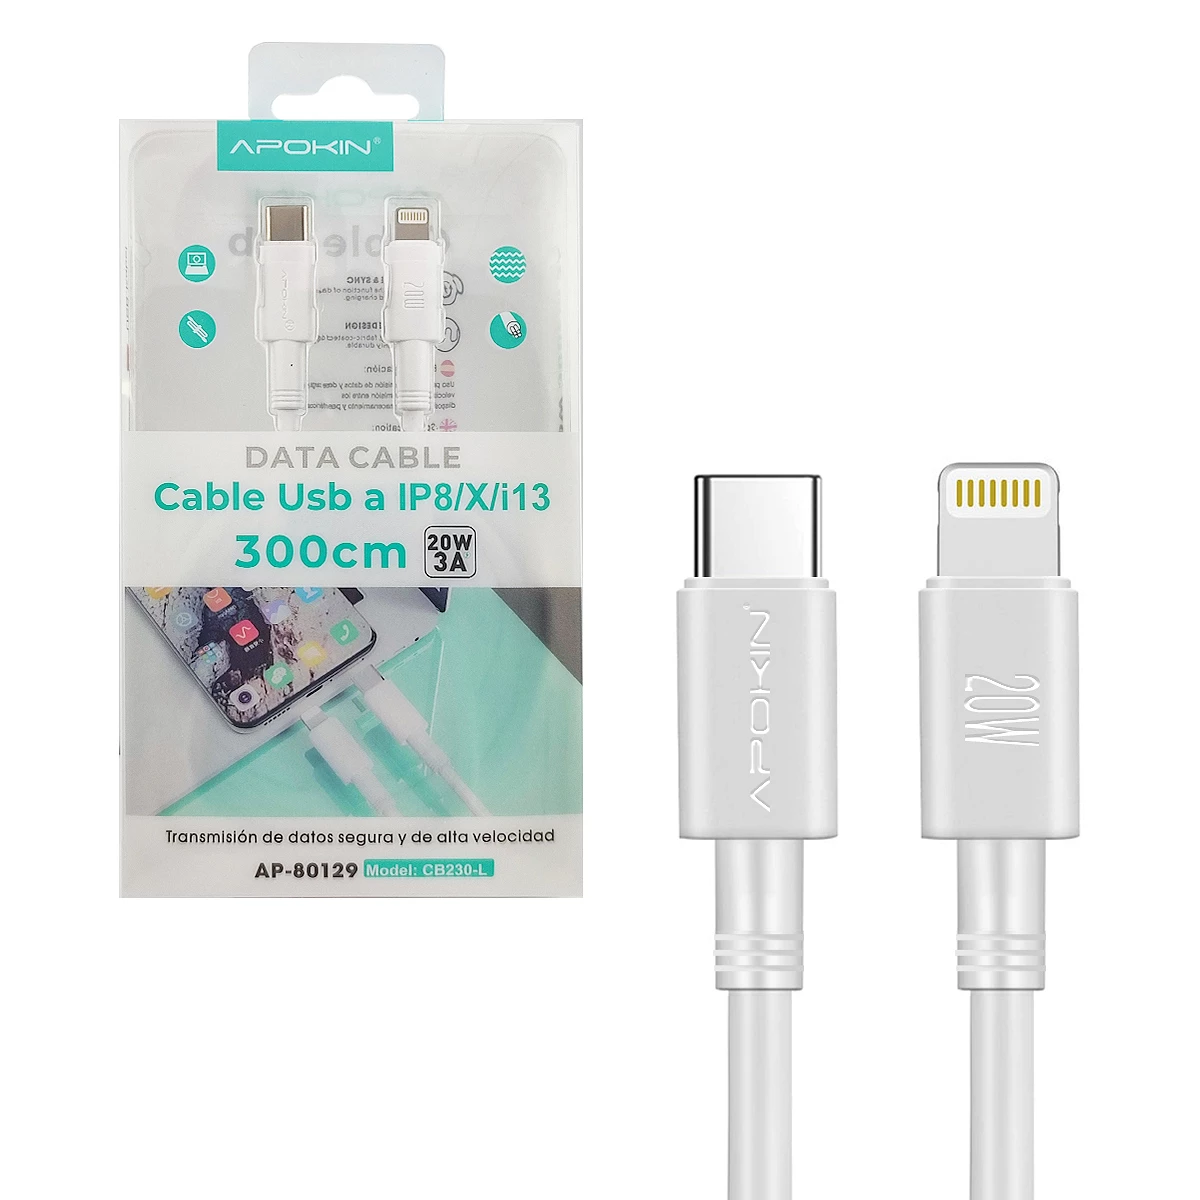 Cable BWOO 2.4A - Carga rápida - 3m - USB-C